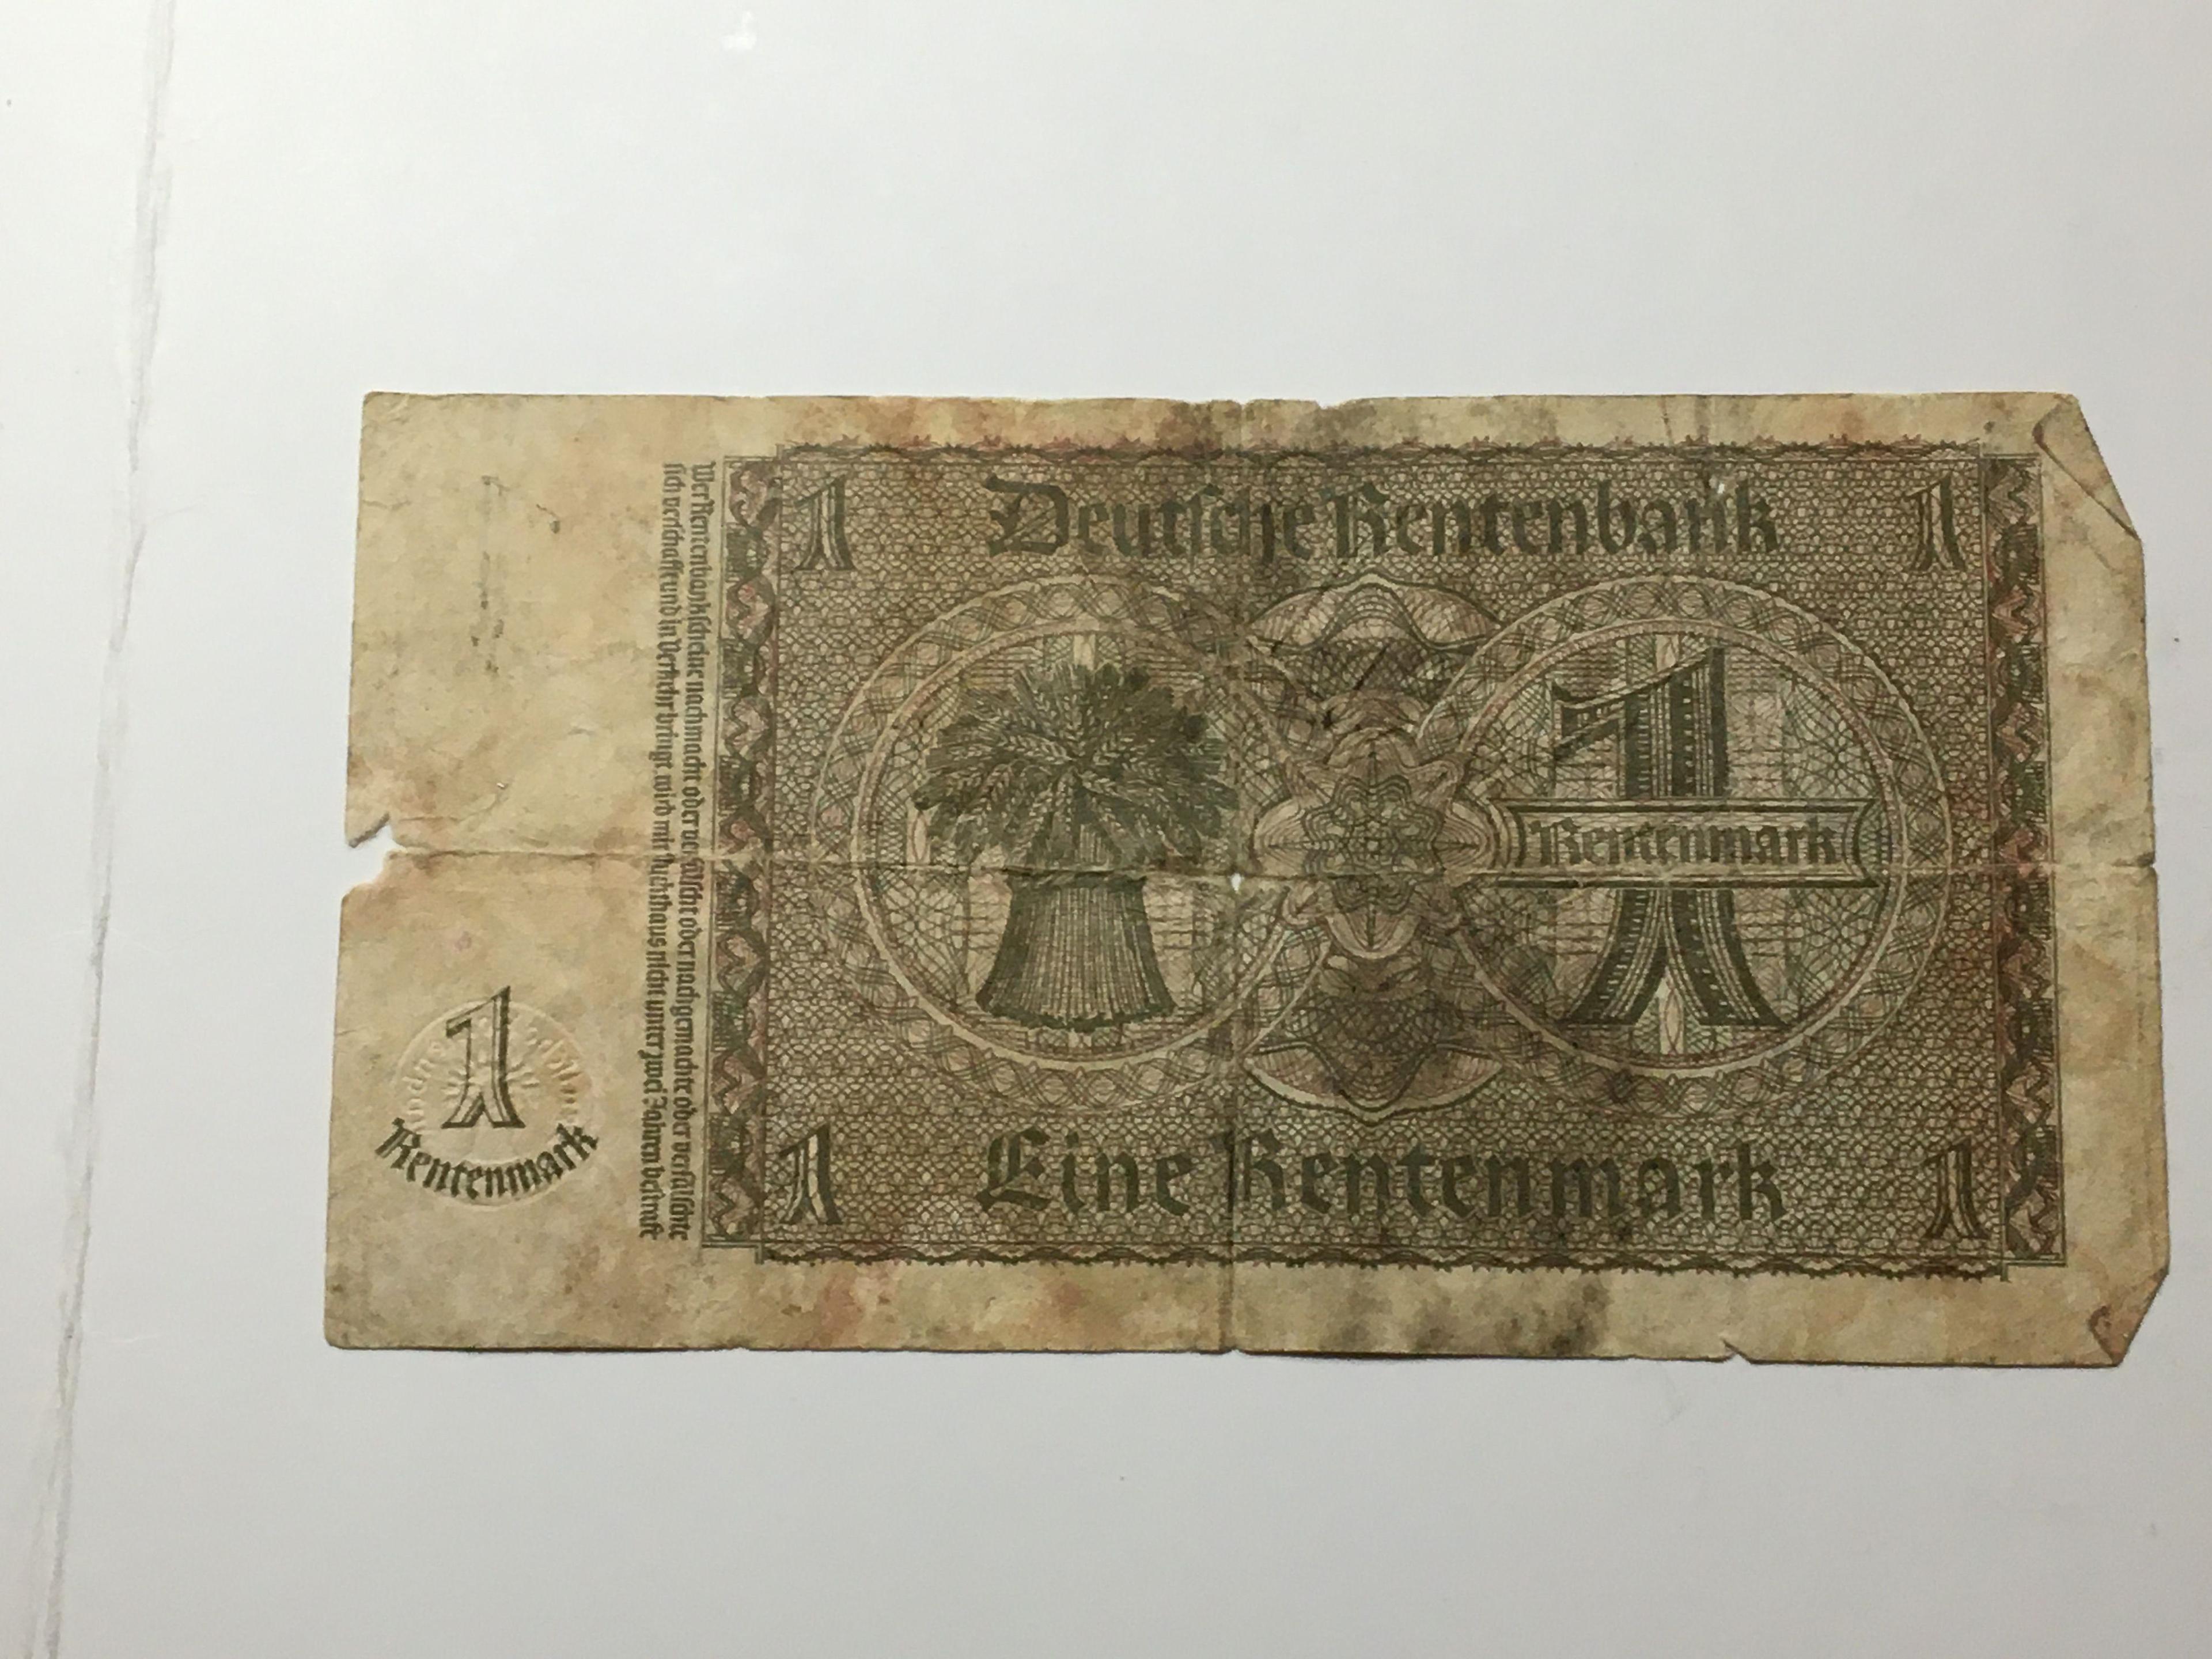 German 1 Rentenmark 1923 Antique Bank Note